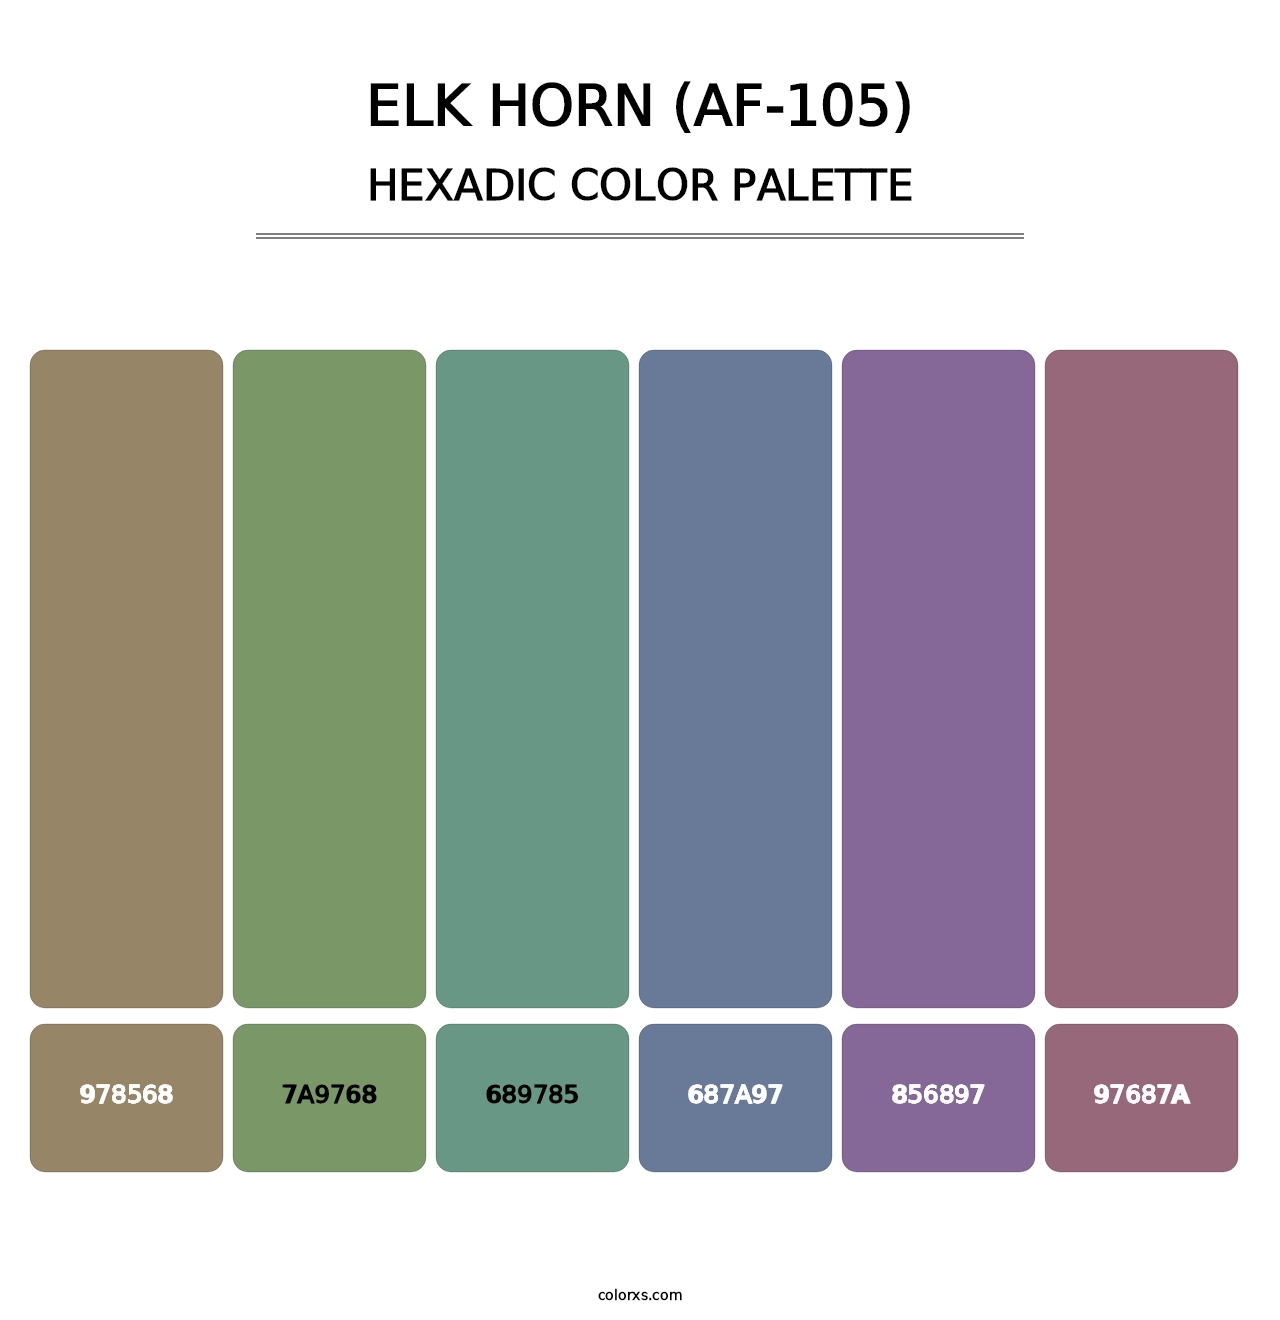 Elk Horn (AF-105) - Hexadic Color Palette